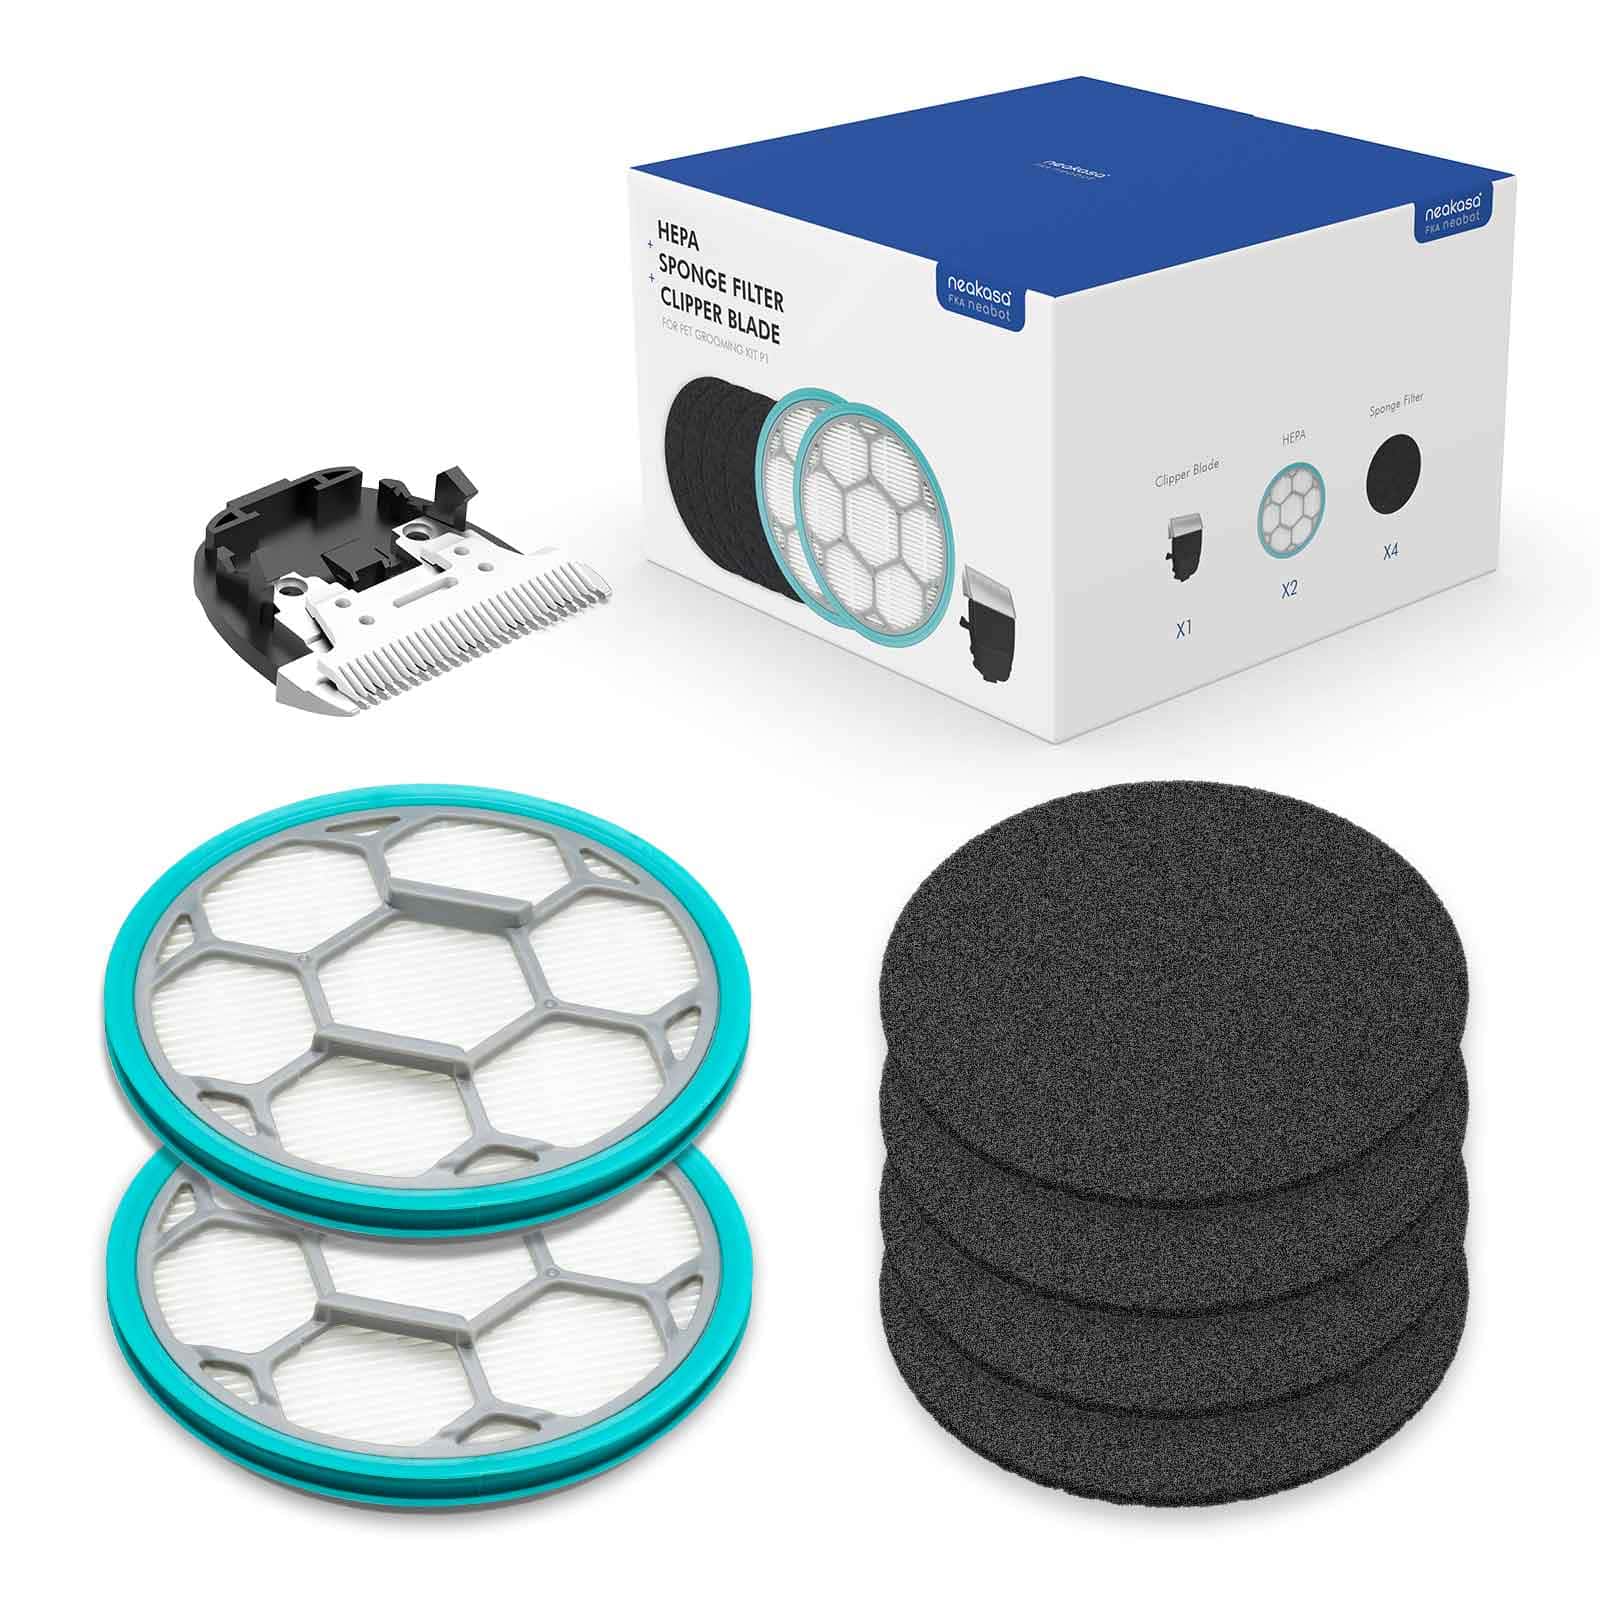 Clipper Blade, Sponge Filter, HEPA for Neakasa P1 Pro Dog Grooming Vacuum Kit - Neabot